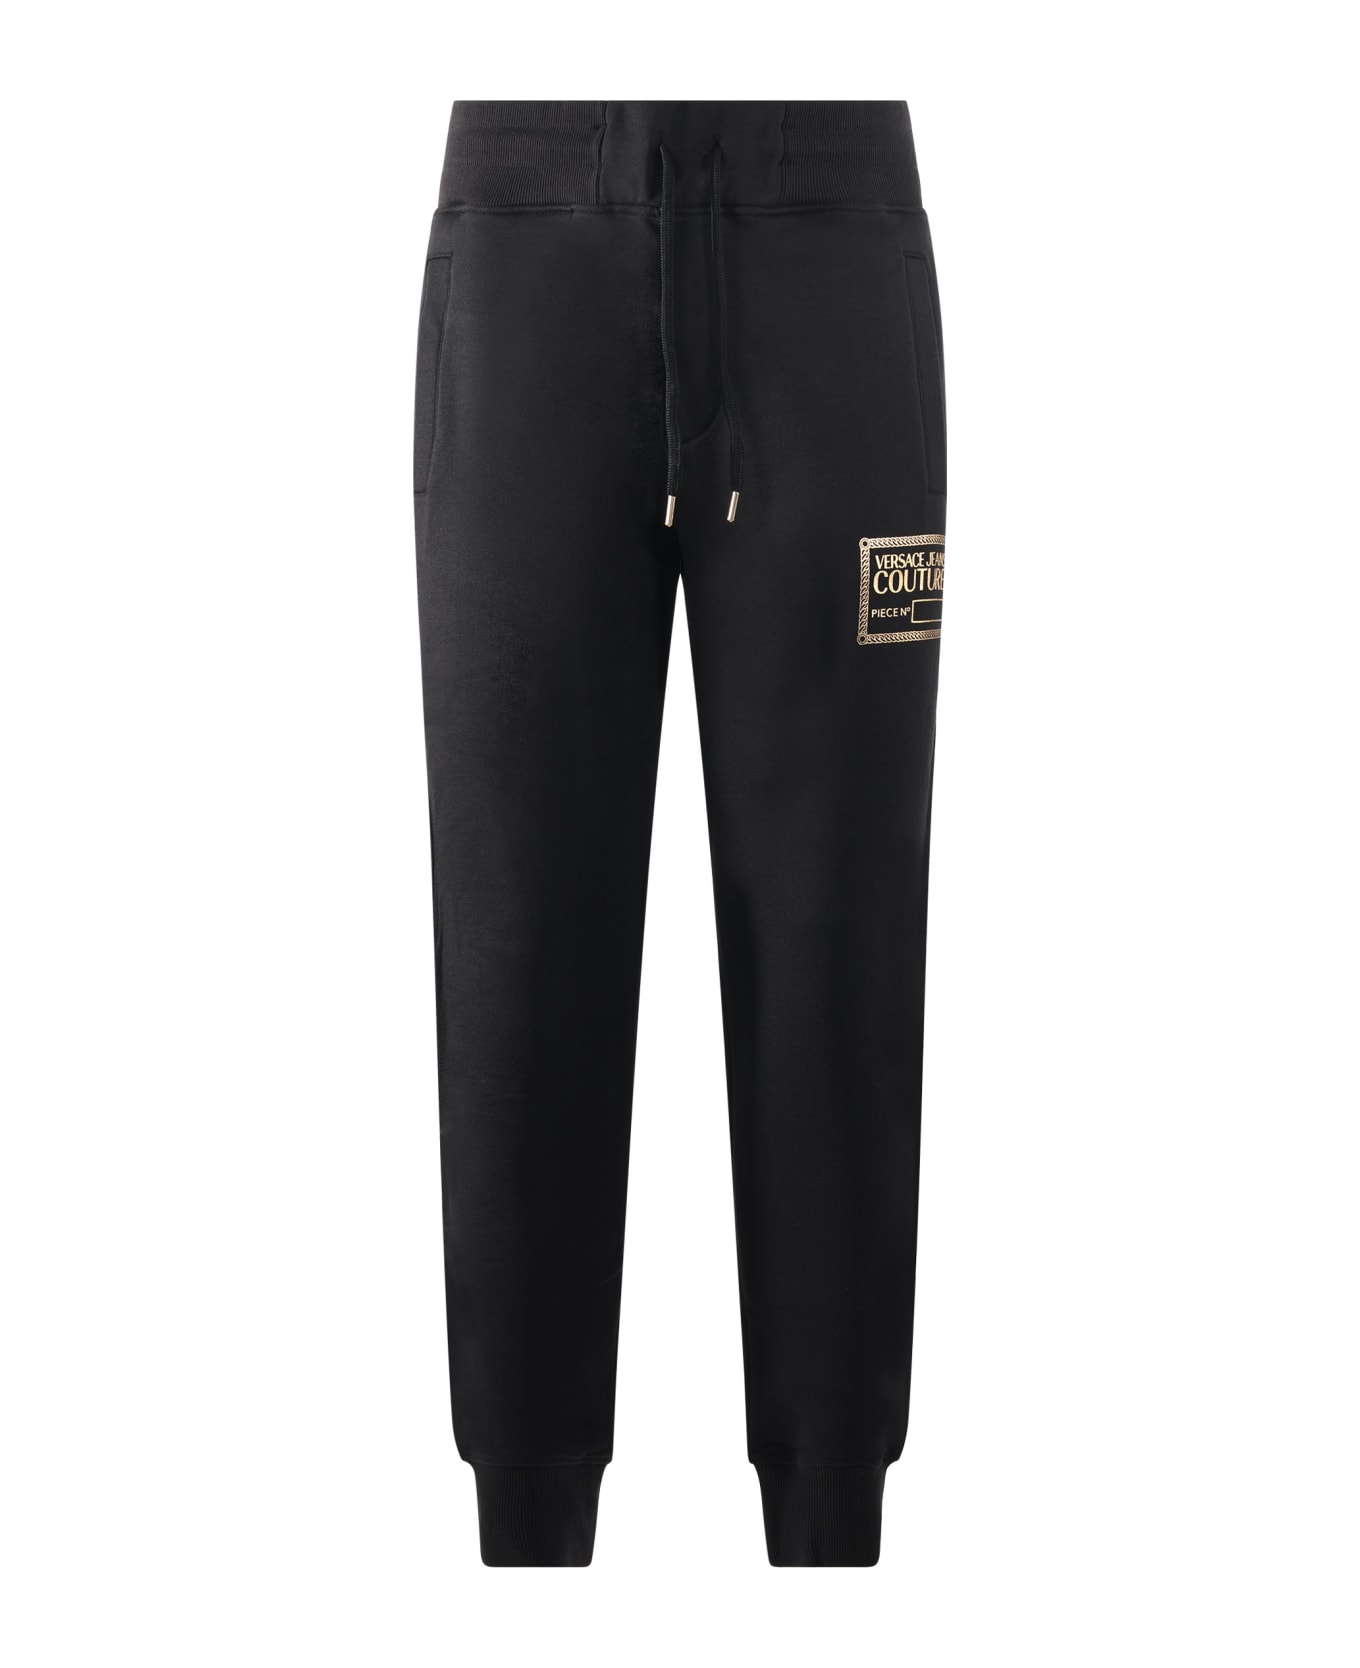 Versace Jeans Couture Jogging Trousers - Nero/oro スウェットパンツ